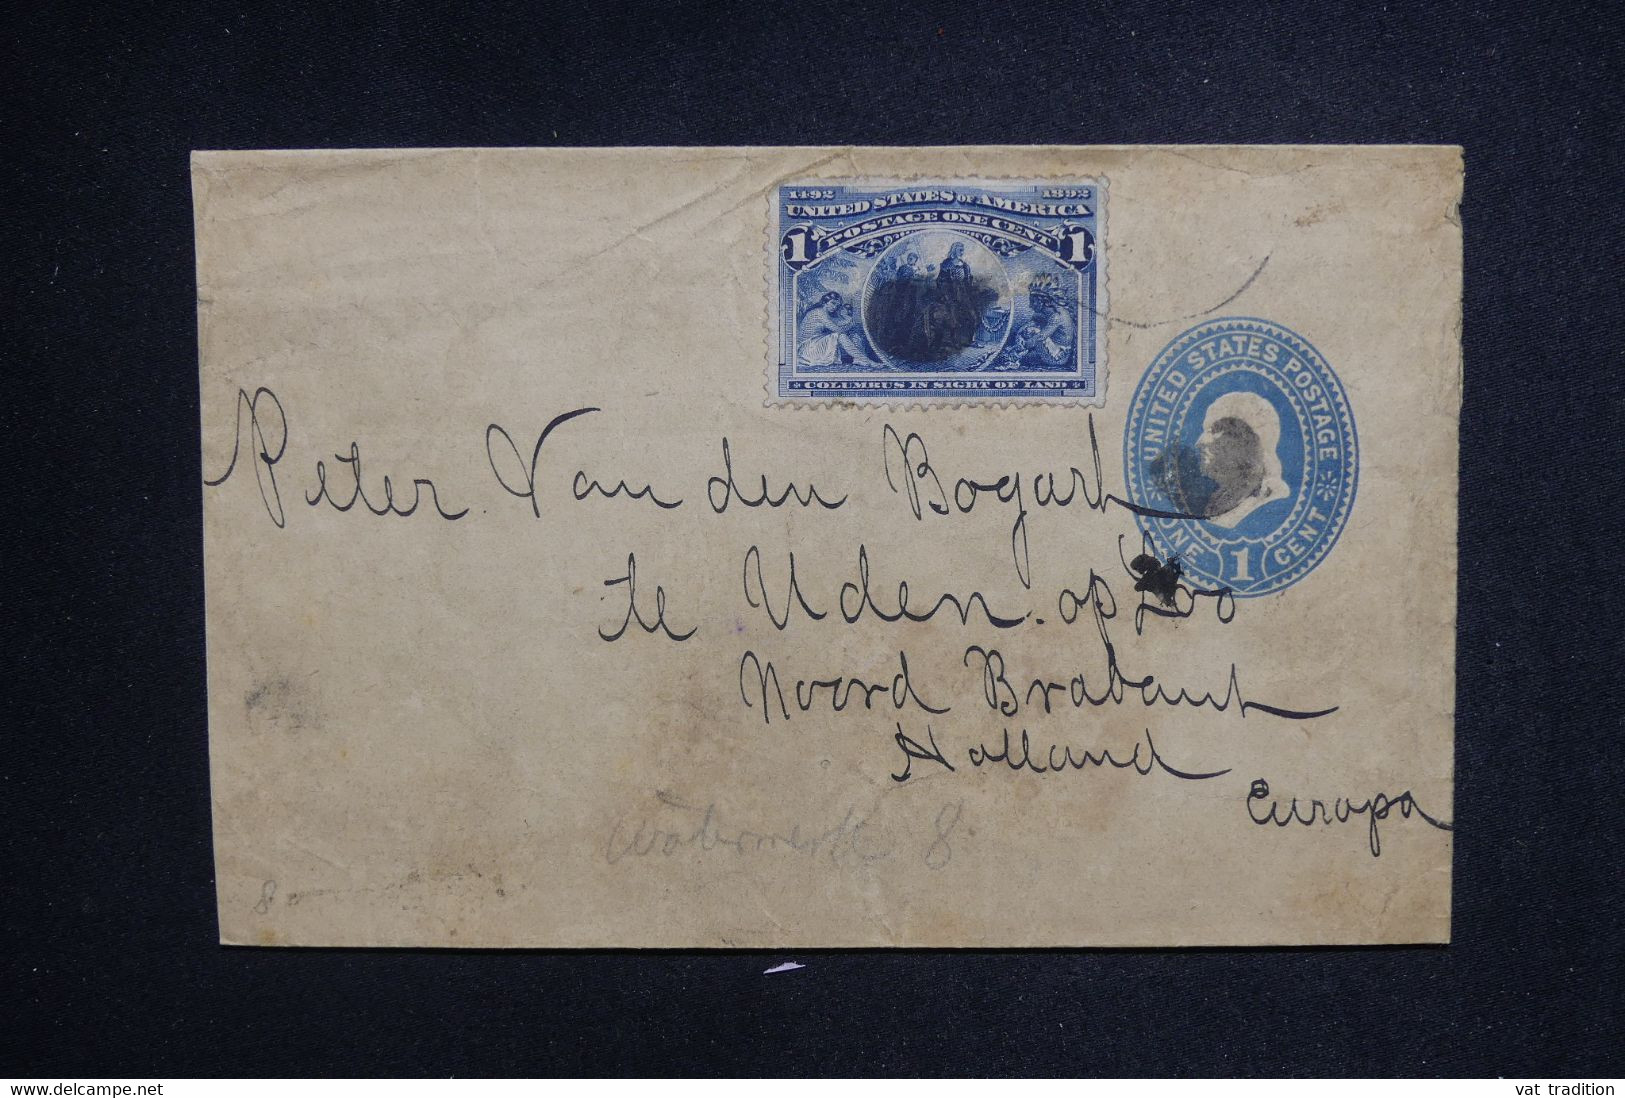 ETATS UNIS - Entier Postal + Complément Pour Les Pays Bas En 1894 - L 128160 - ...-1900